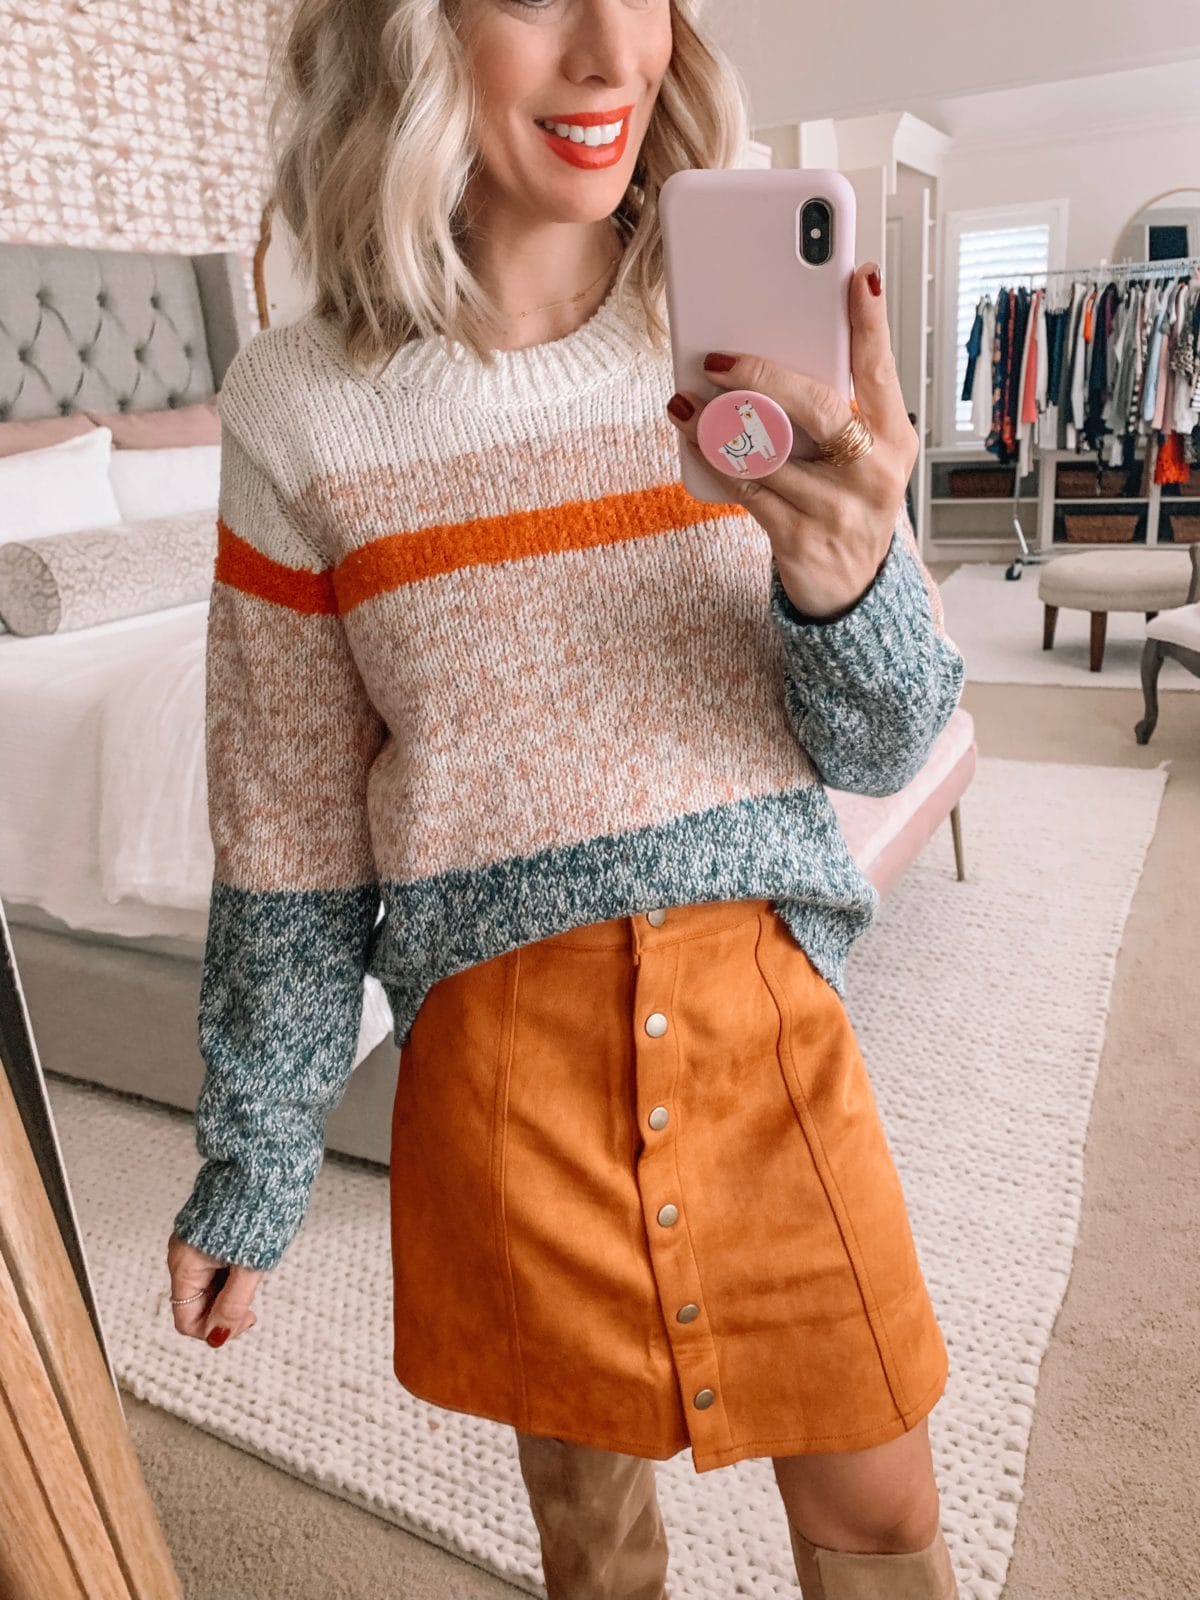 Amazon Prime Fashion- Sweater and Corduroy Skirt 